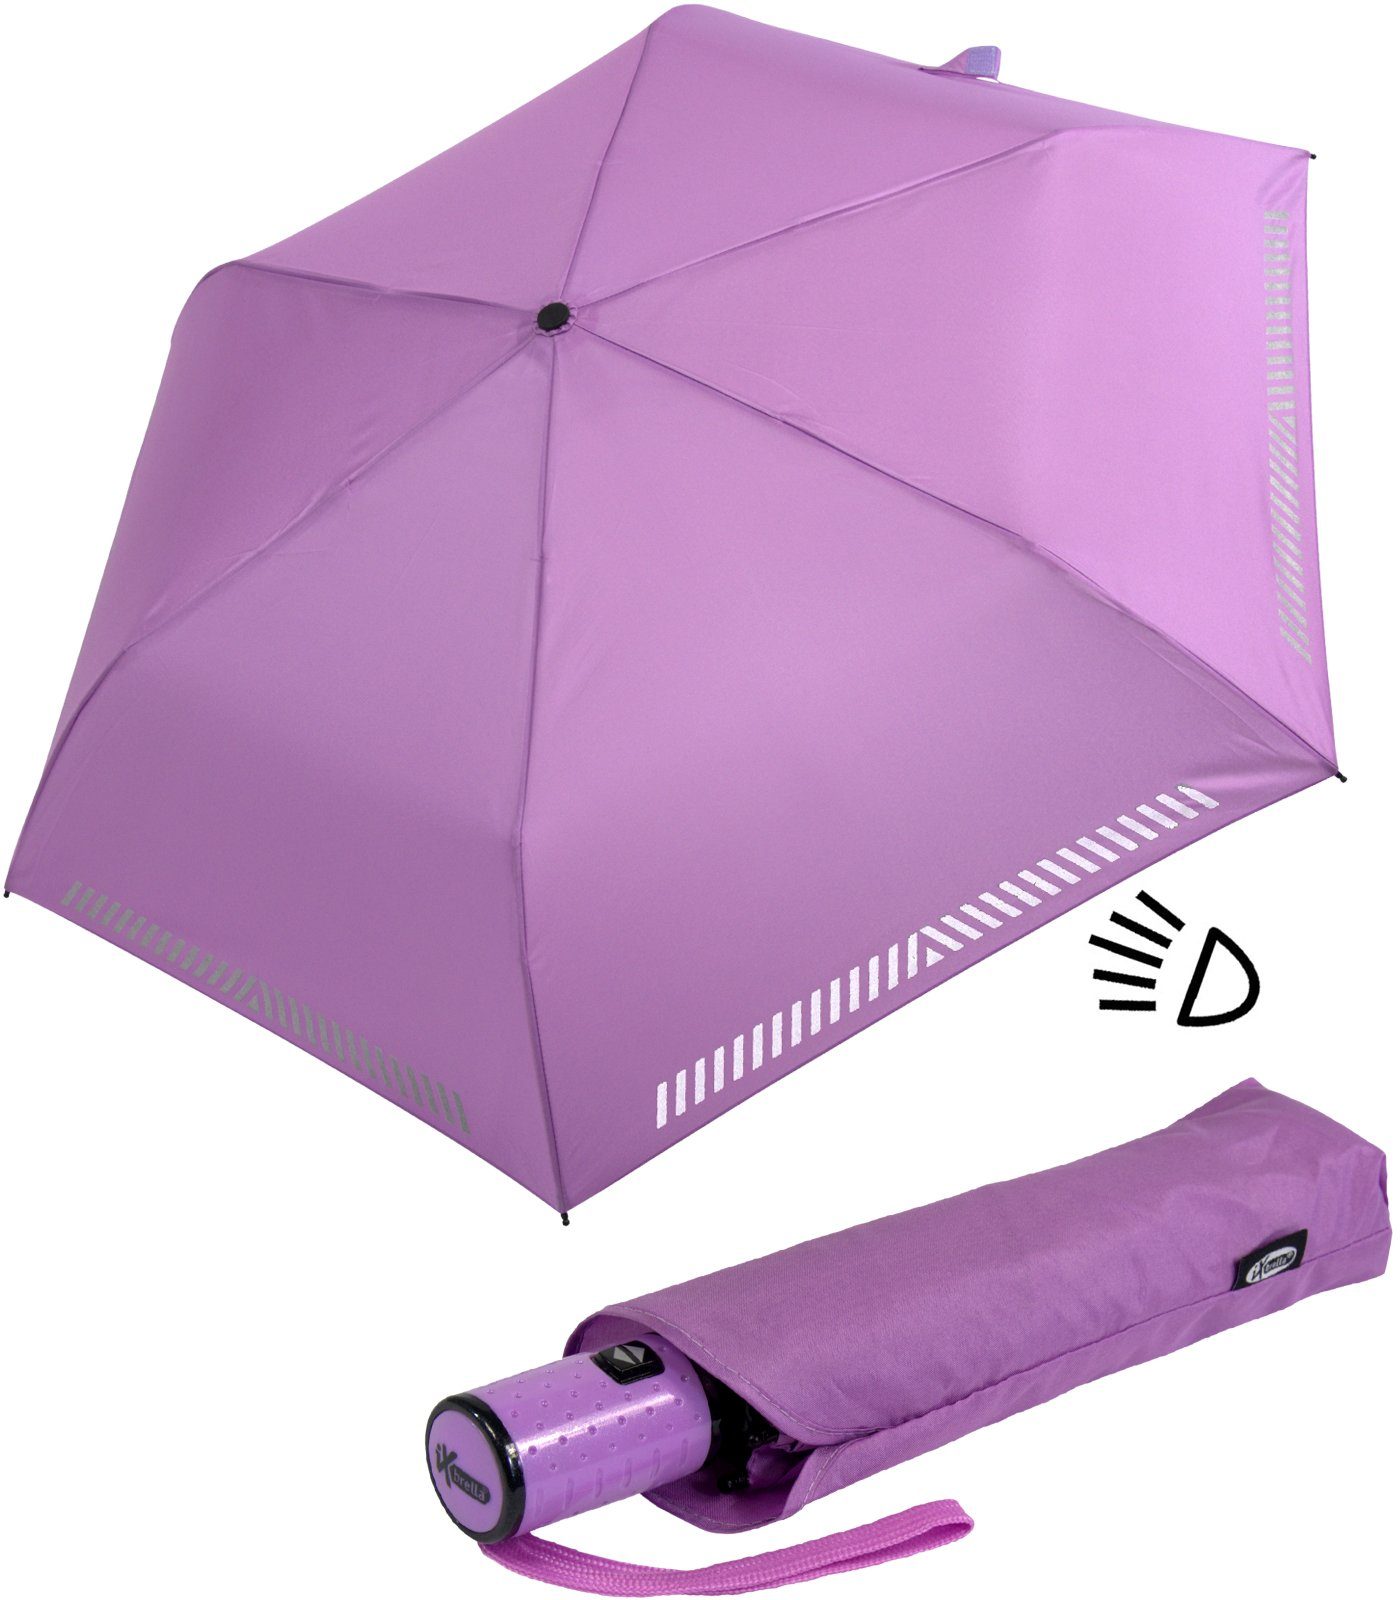 Reflex-Streifen reflektierend, mit iX-brella Sicherheit hell-lila Taschenregenschirm - Kinderschirm Auf-Zu-Automatik, durch